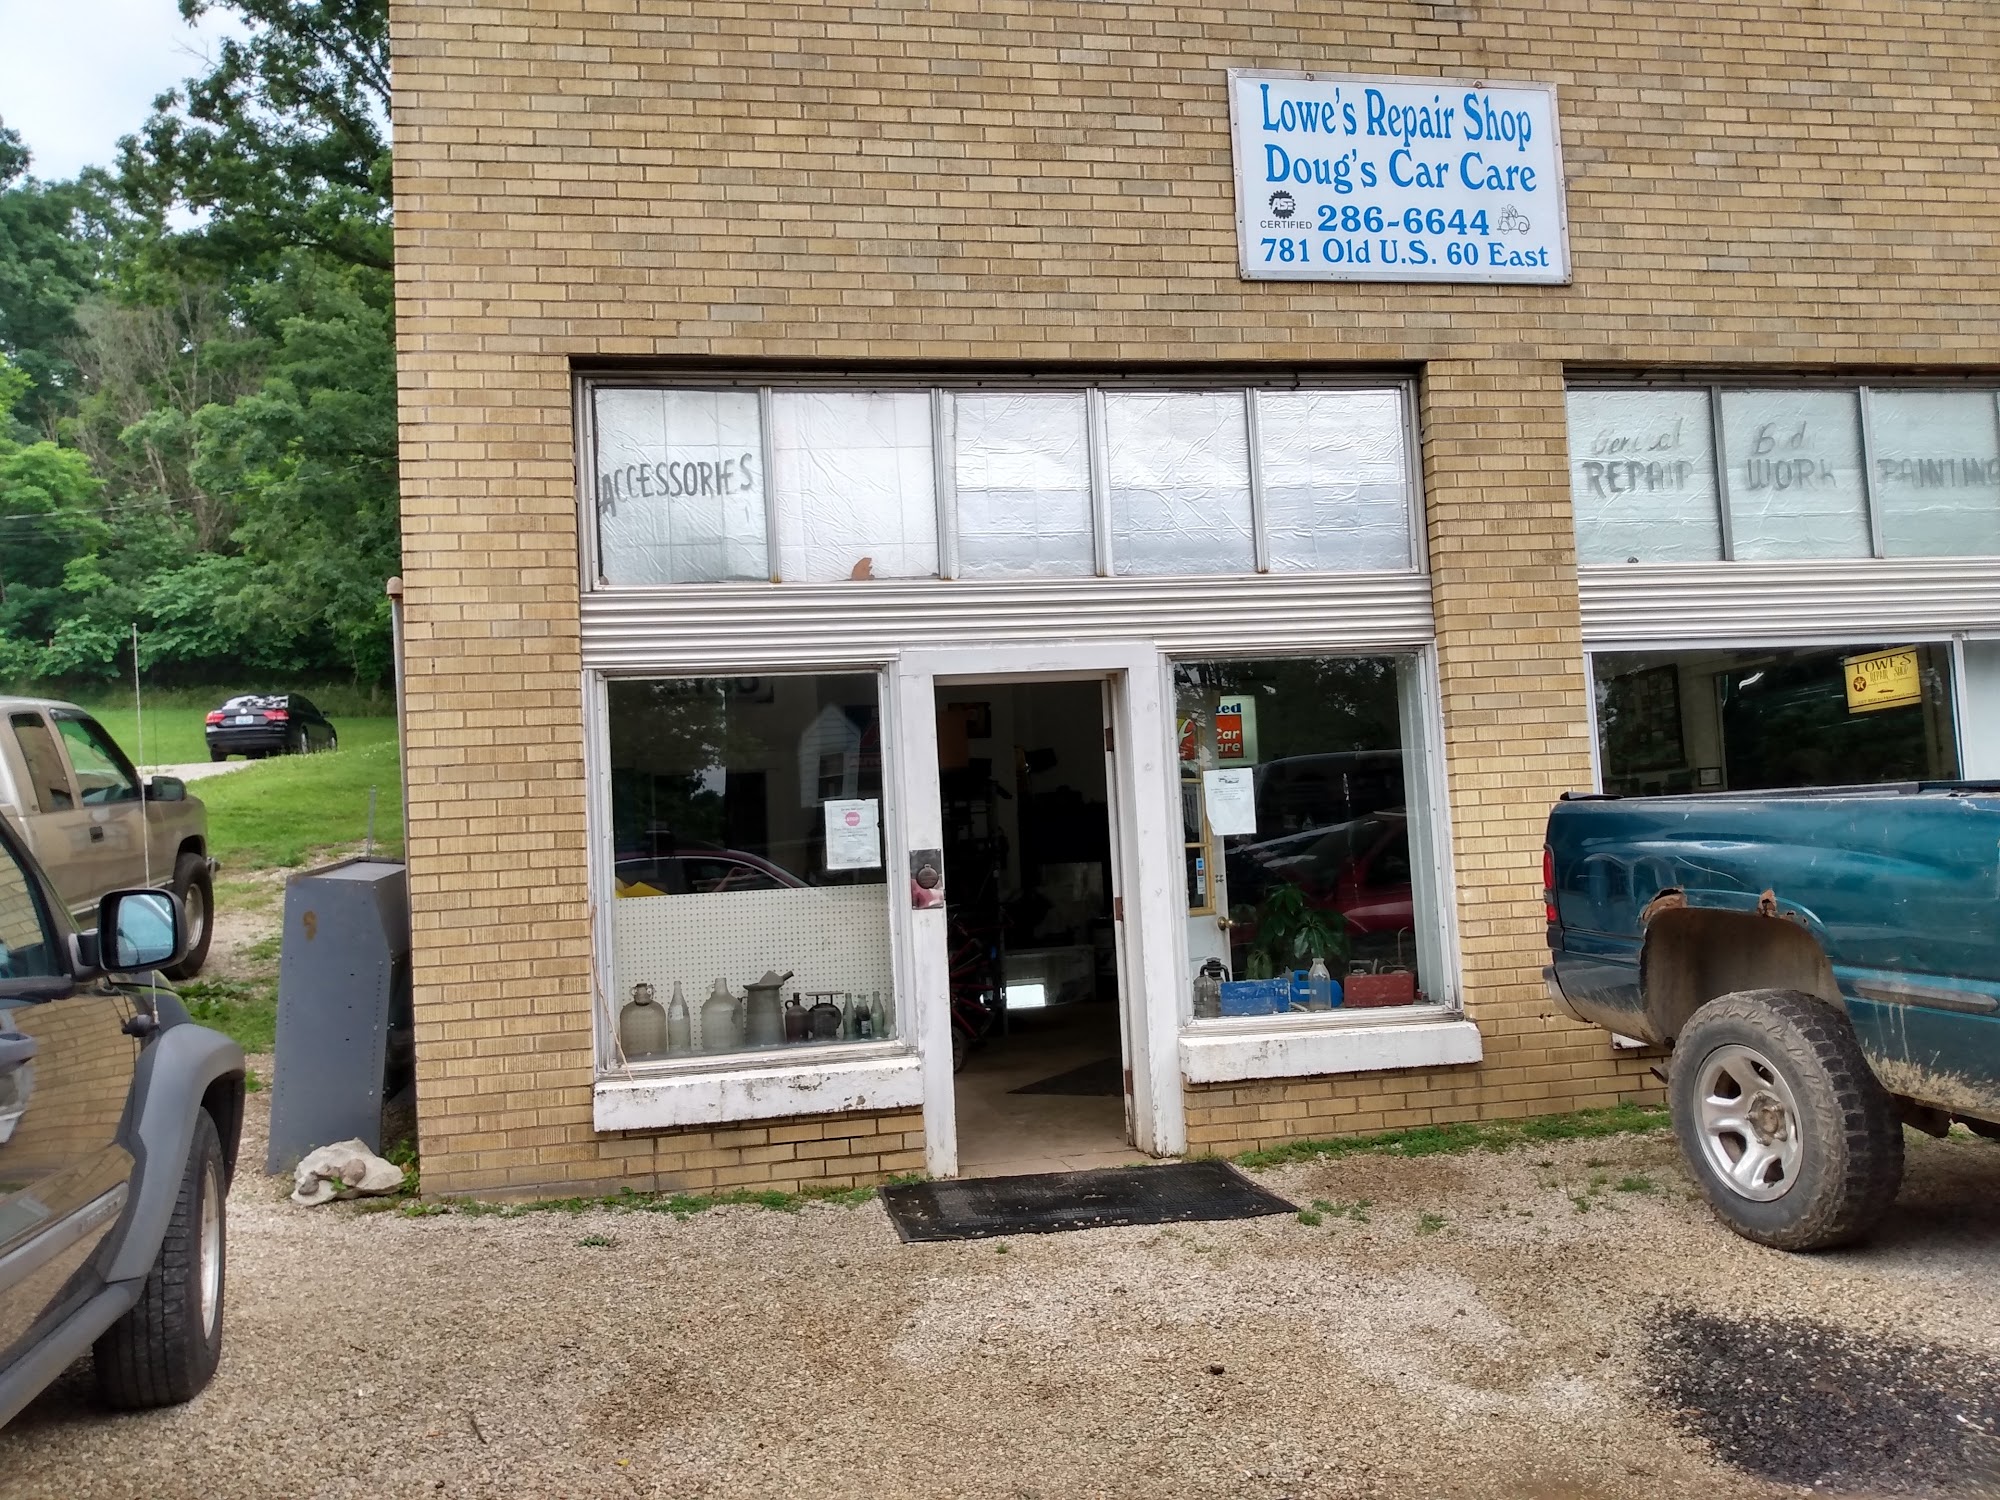 Lowe's Repair Shop